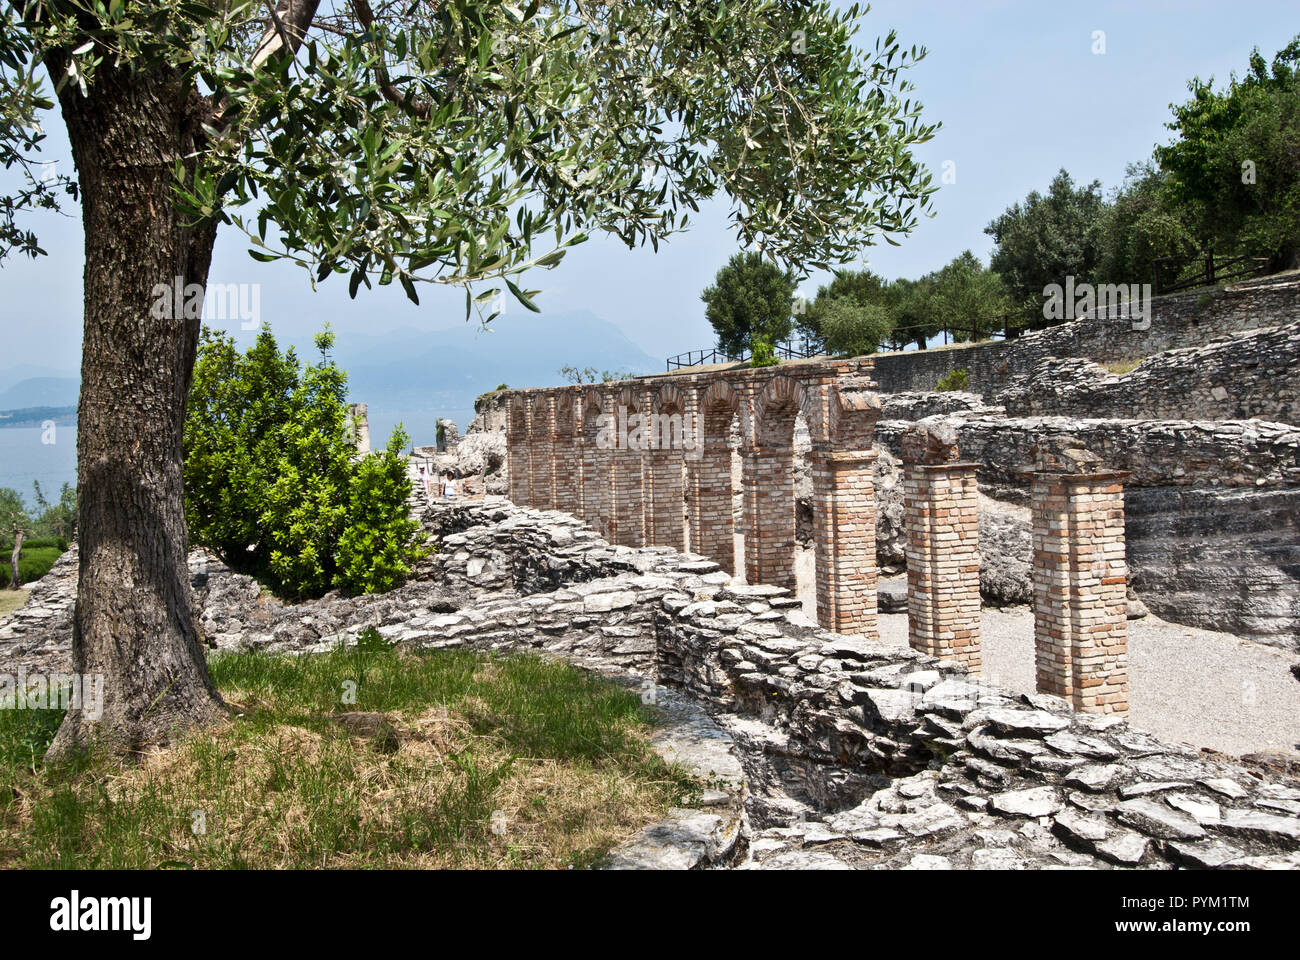 Ruinas Romanas en el sitio arqueológico de la península de Sirmione, el Lago de Garda, Italia Foto de stock